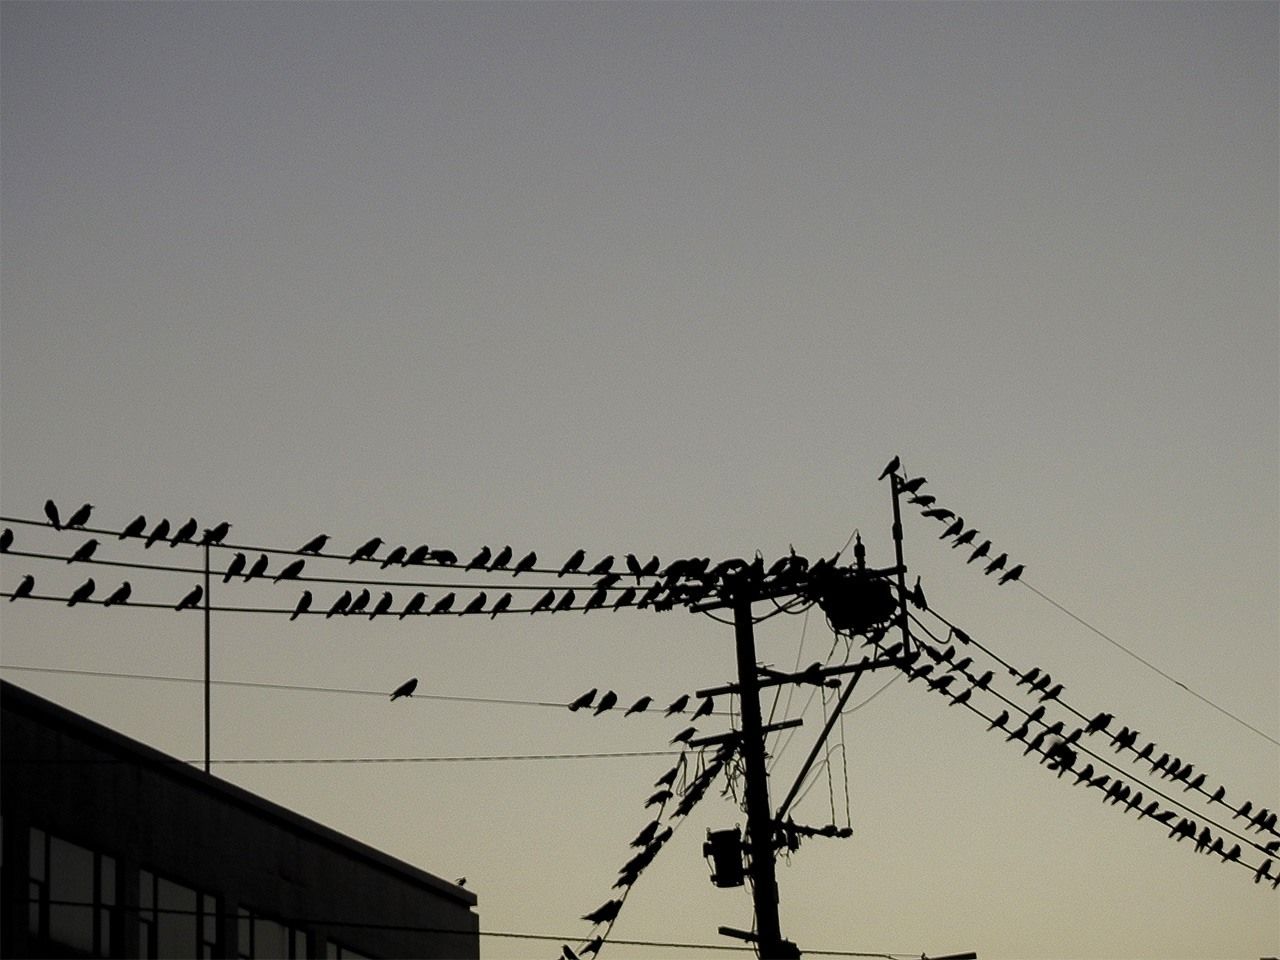 停在市區電線上的烏鴉。地面被大量糞便污染